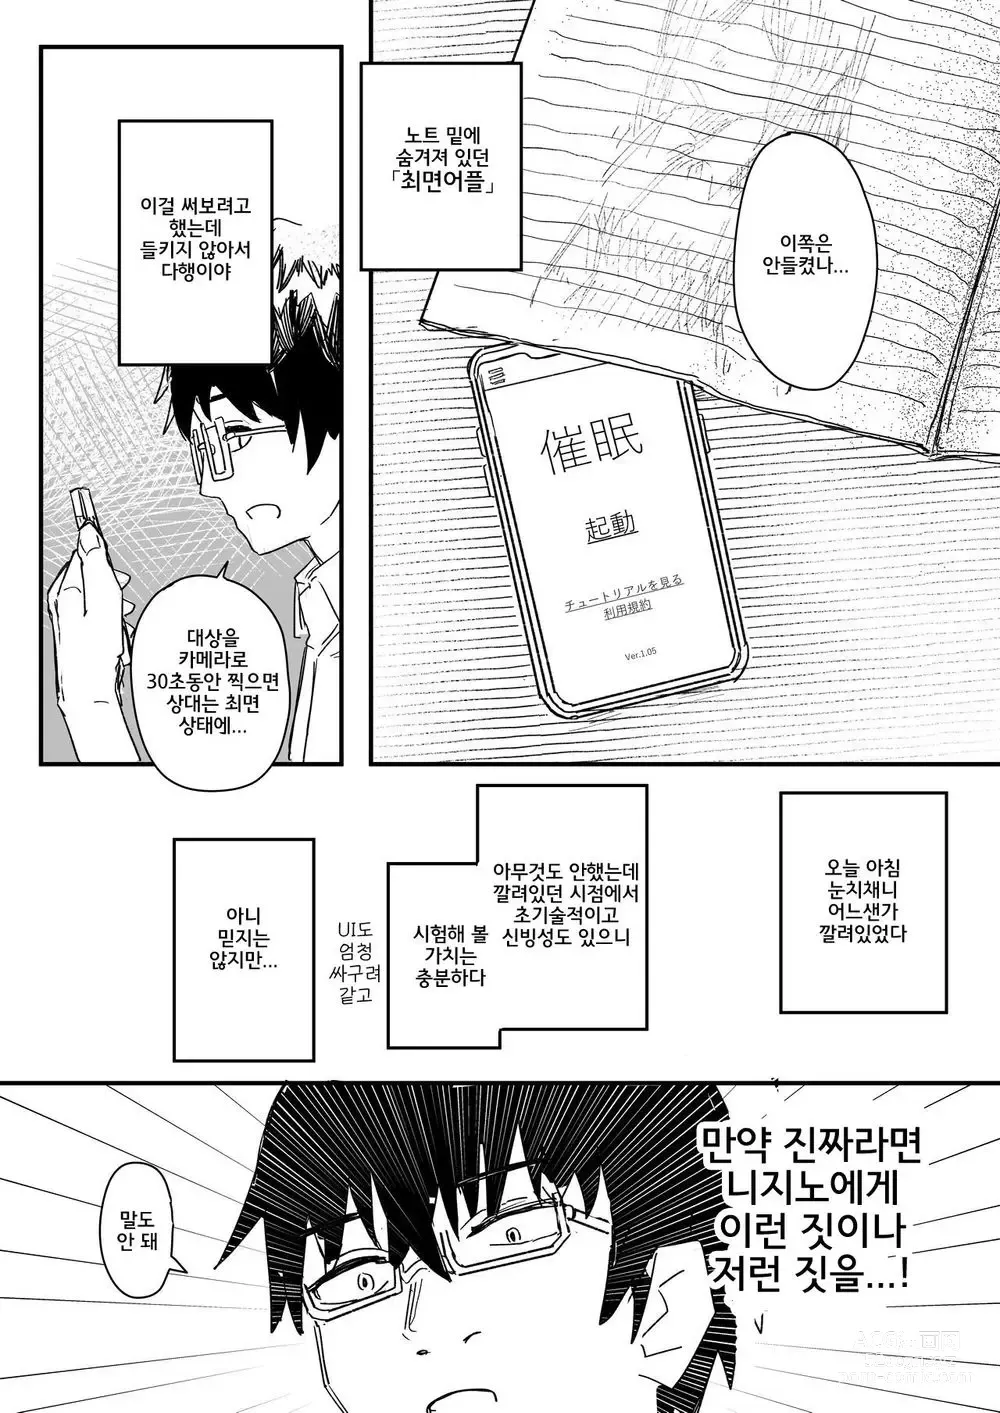 Page 5 of doujinshi 최면어플이 진짜일지도 모르기에 써봤다